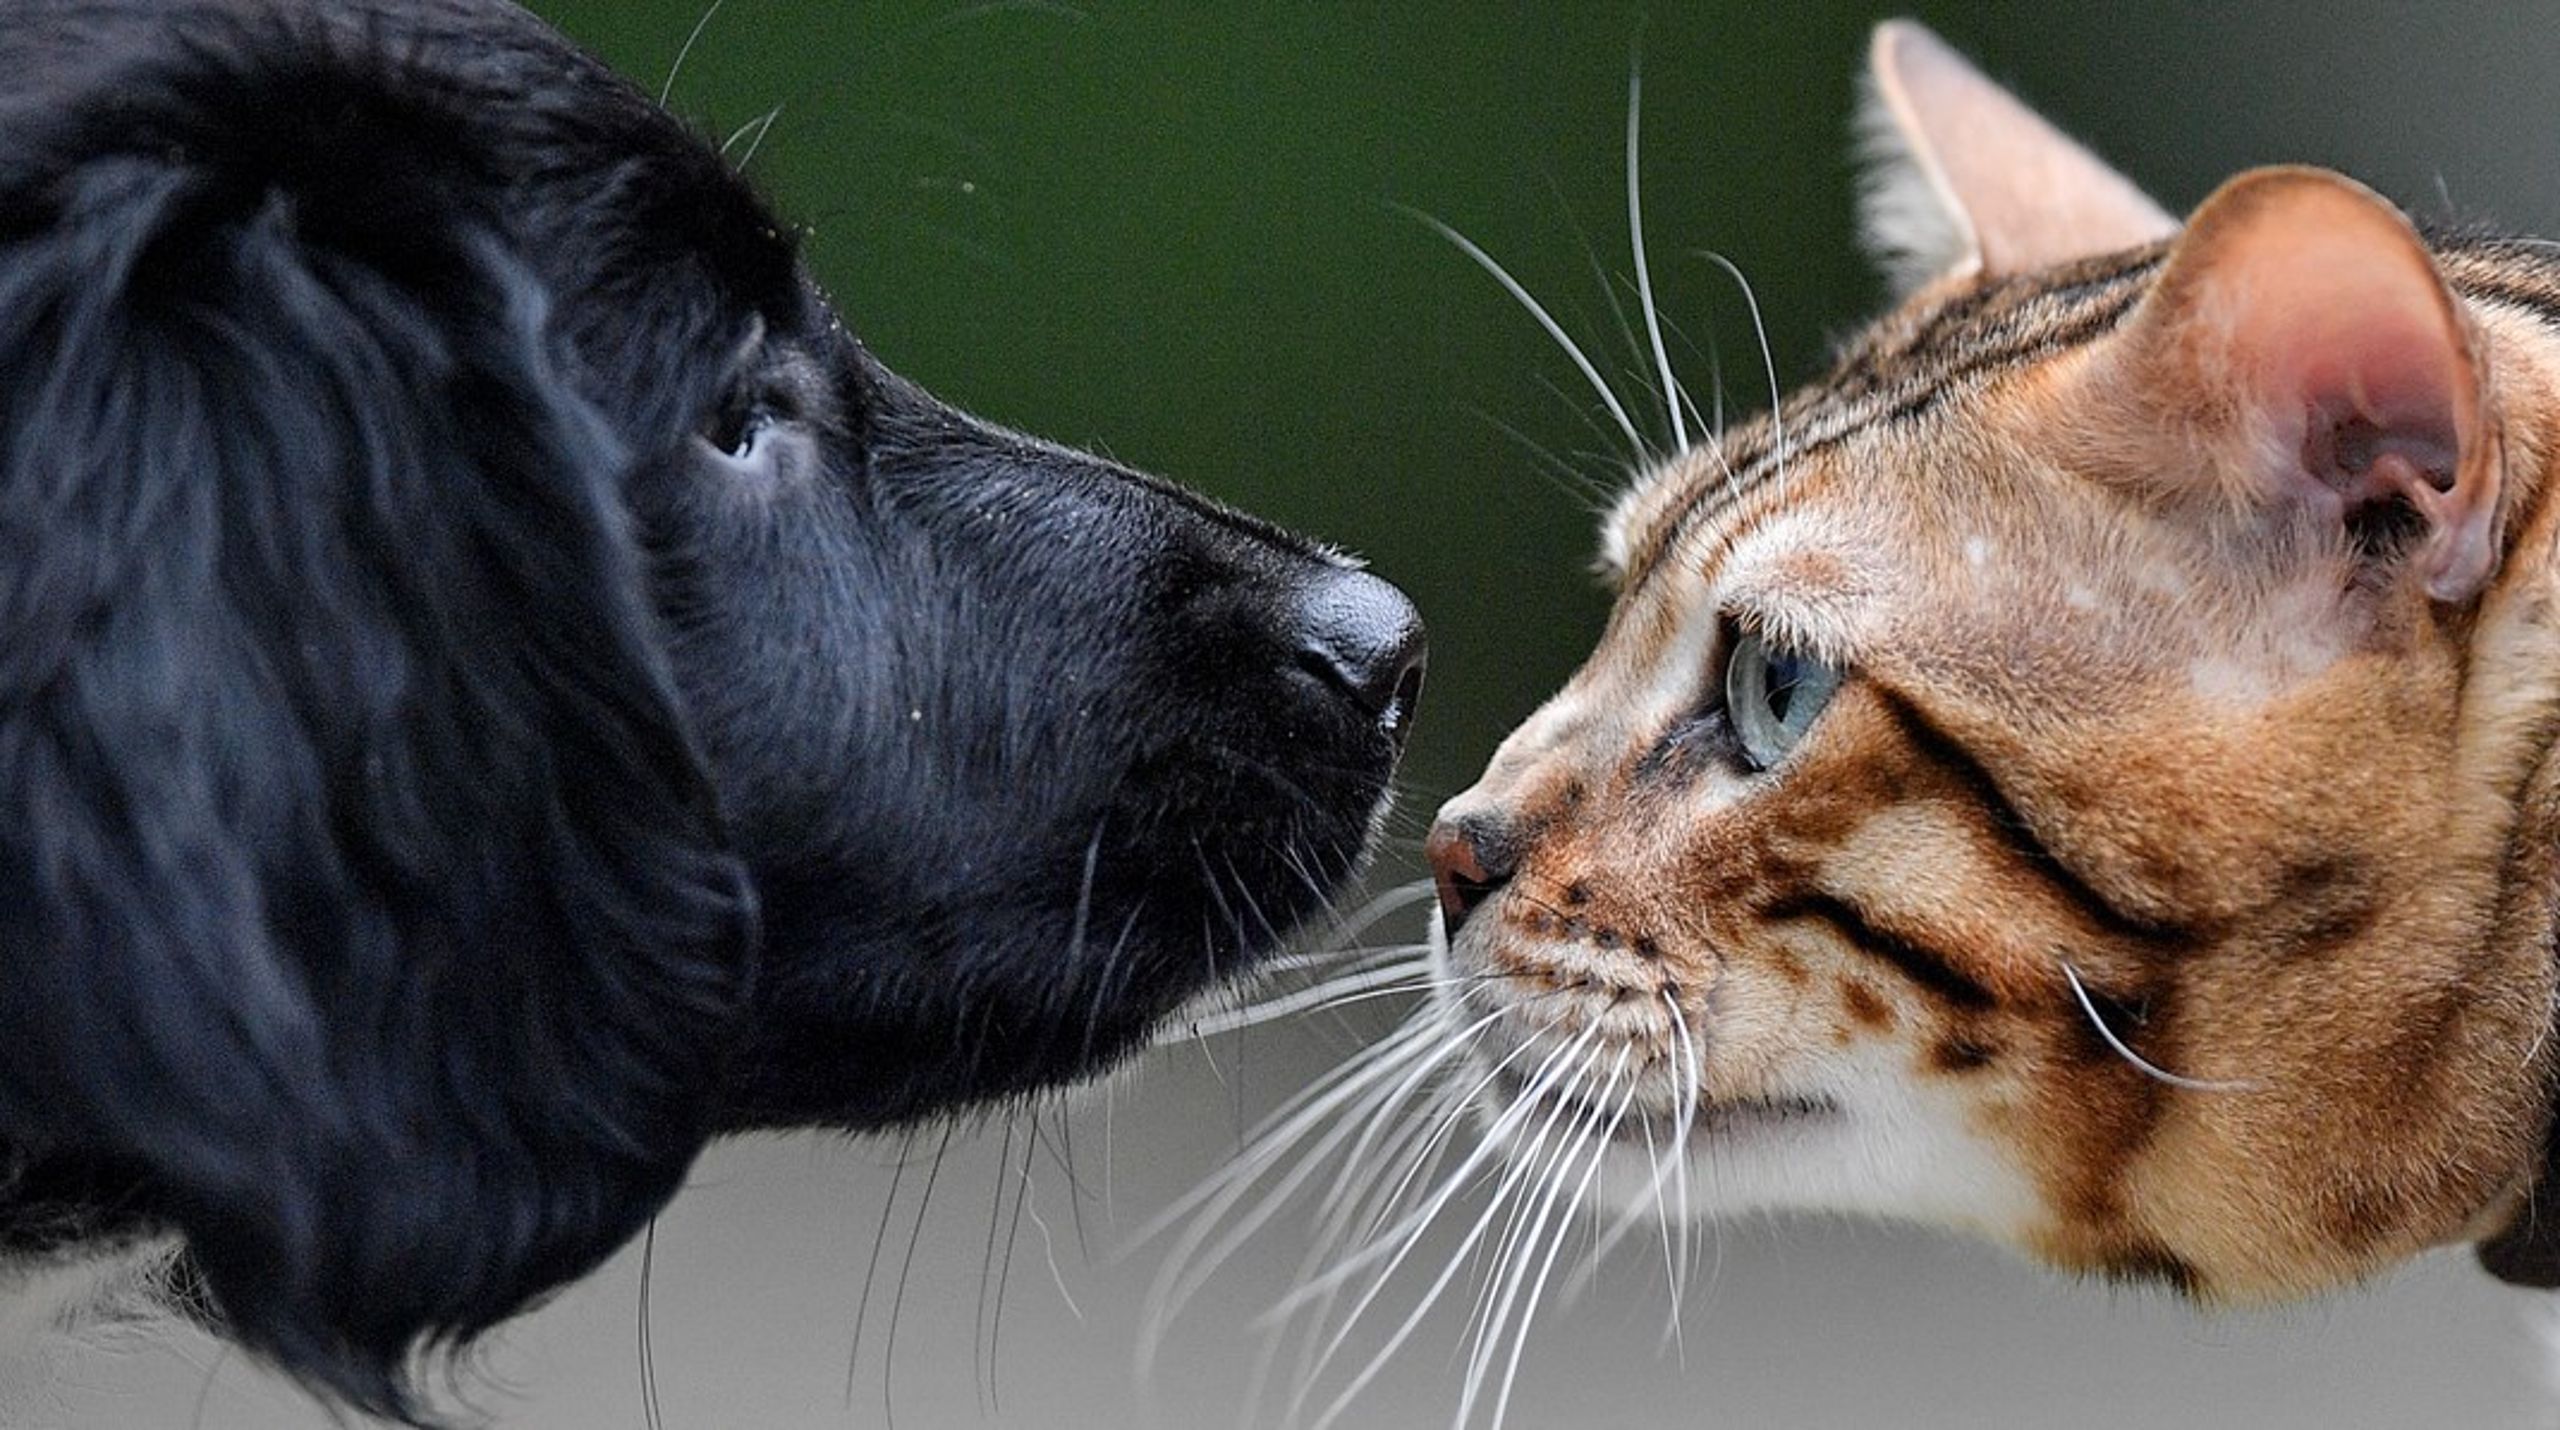 ”Vi har nu tagit ett första steg ut ur detta otidsenliga tänkande för att börja möta upp mot den kunskap vi har om djuren i dag.”